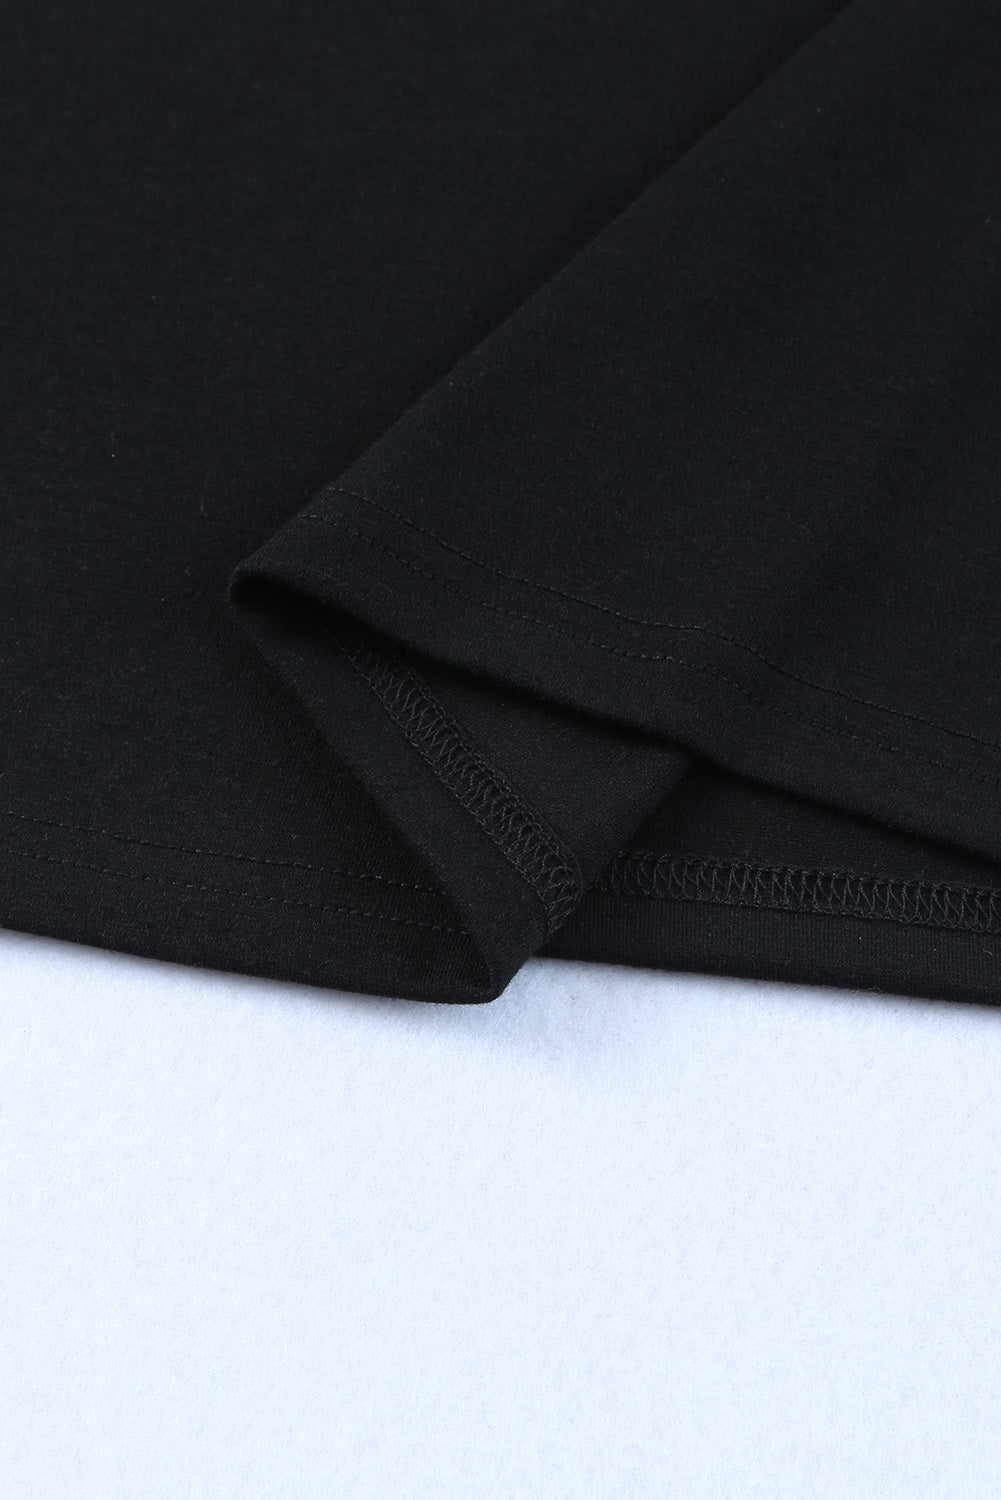 Black Off Shoulder Plaid&Leopard Print Long Sleeve Top Long Sleeve Tops JT's Designer Fashion